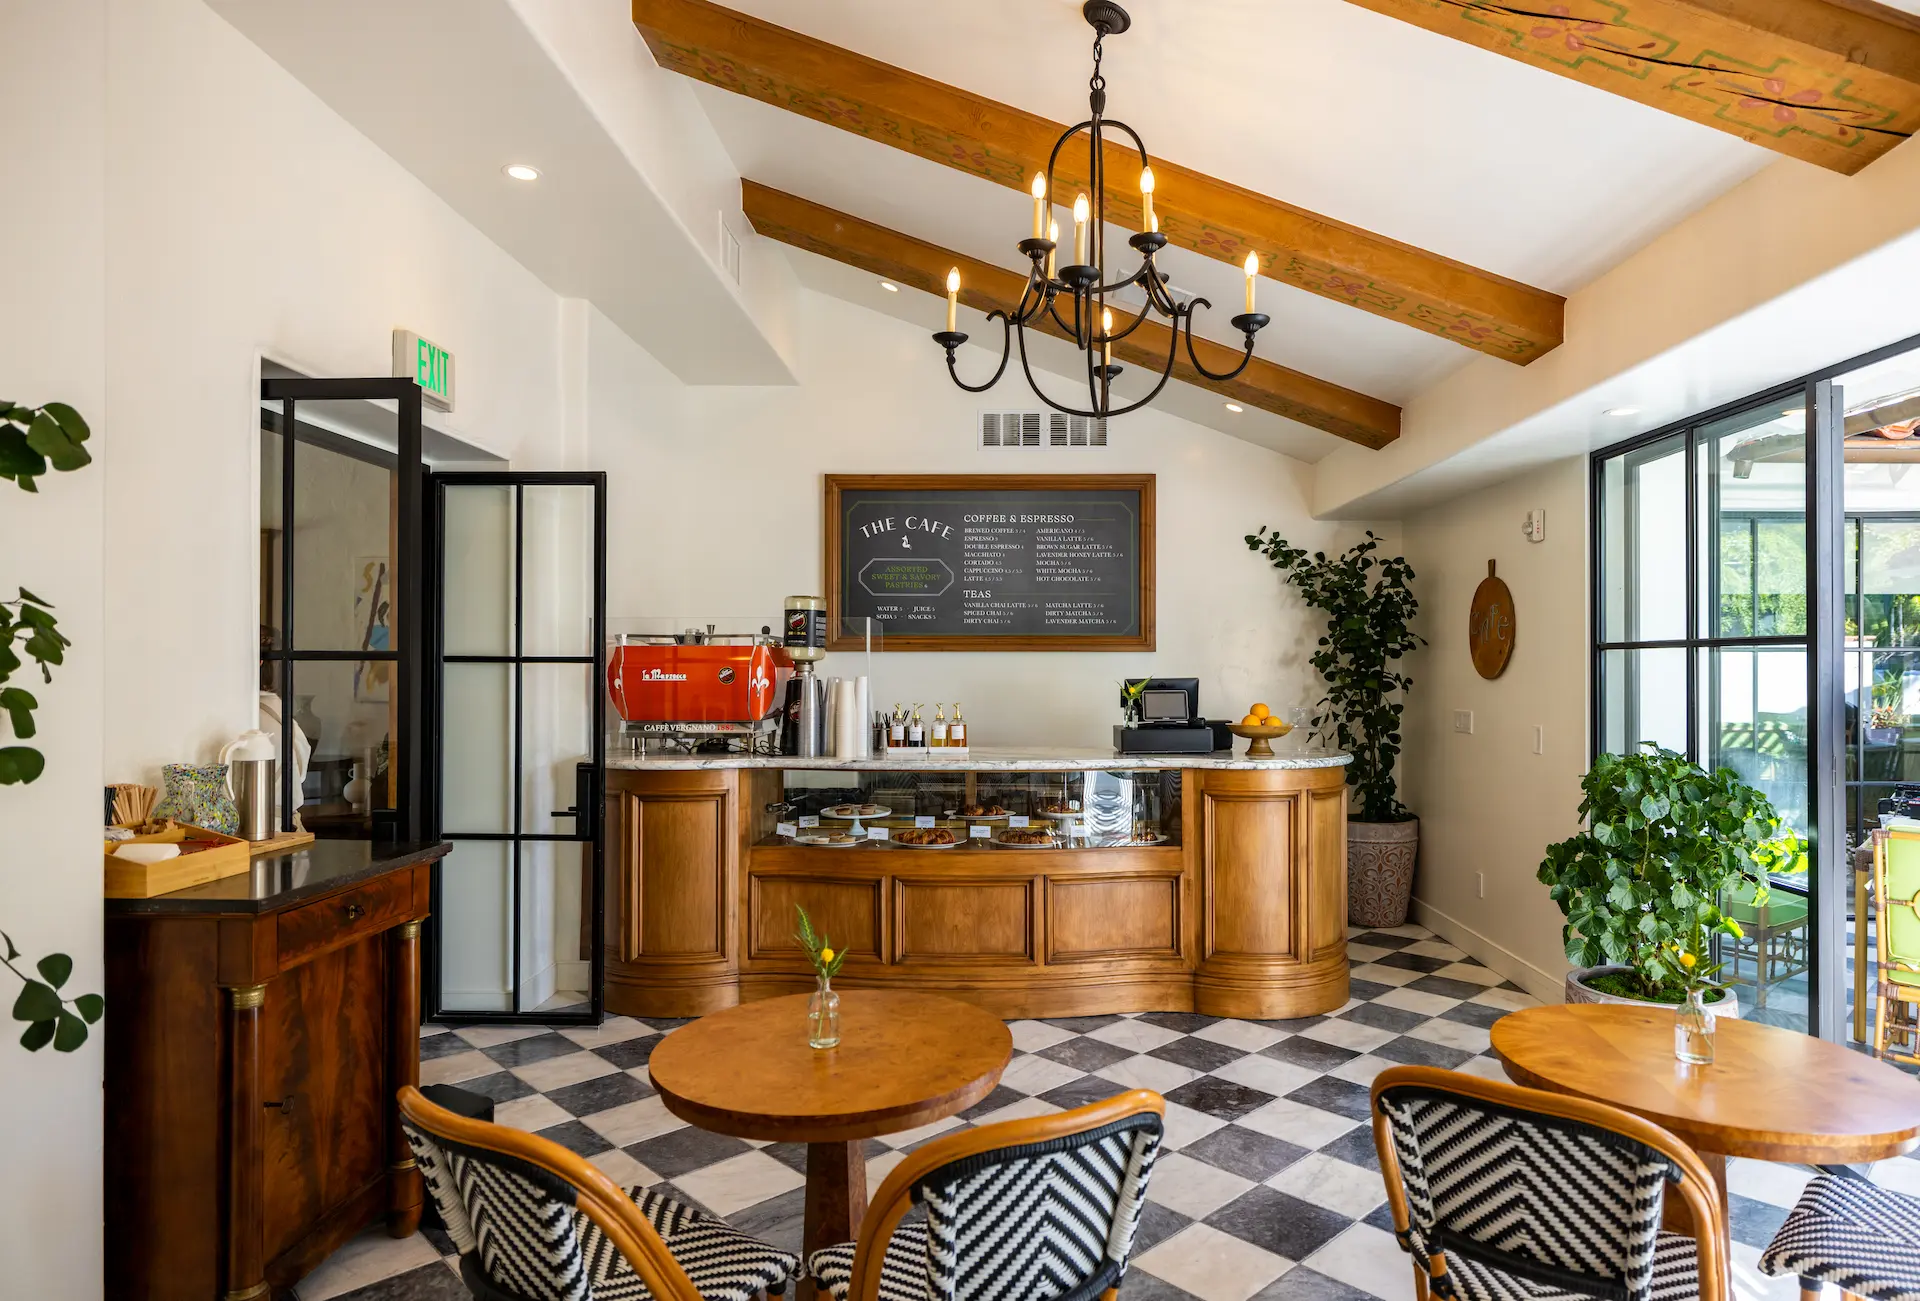 The Cafe interior | The Inn at Rancho Santa Fe